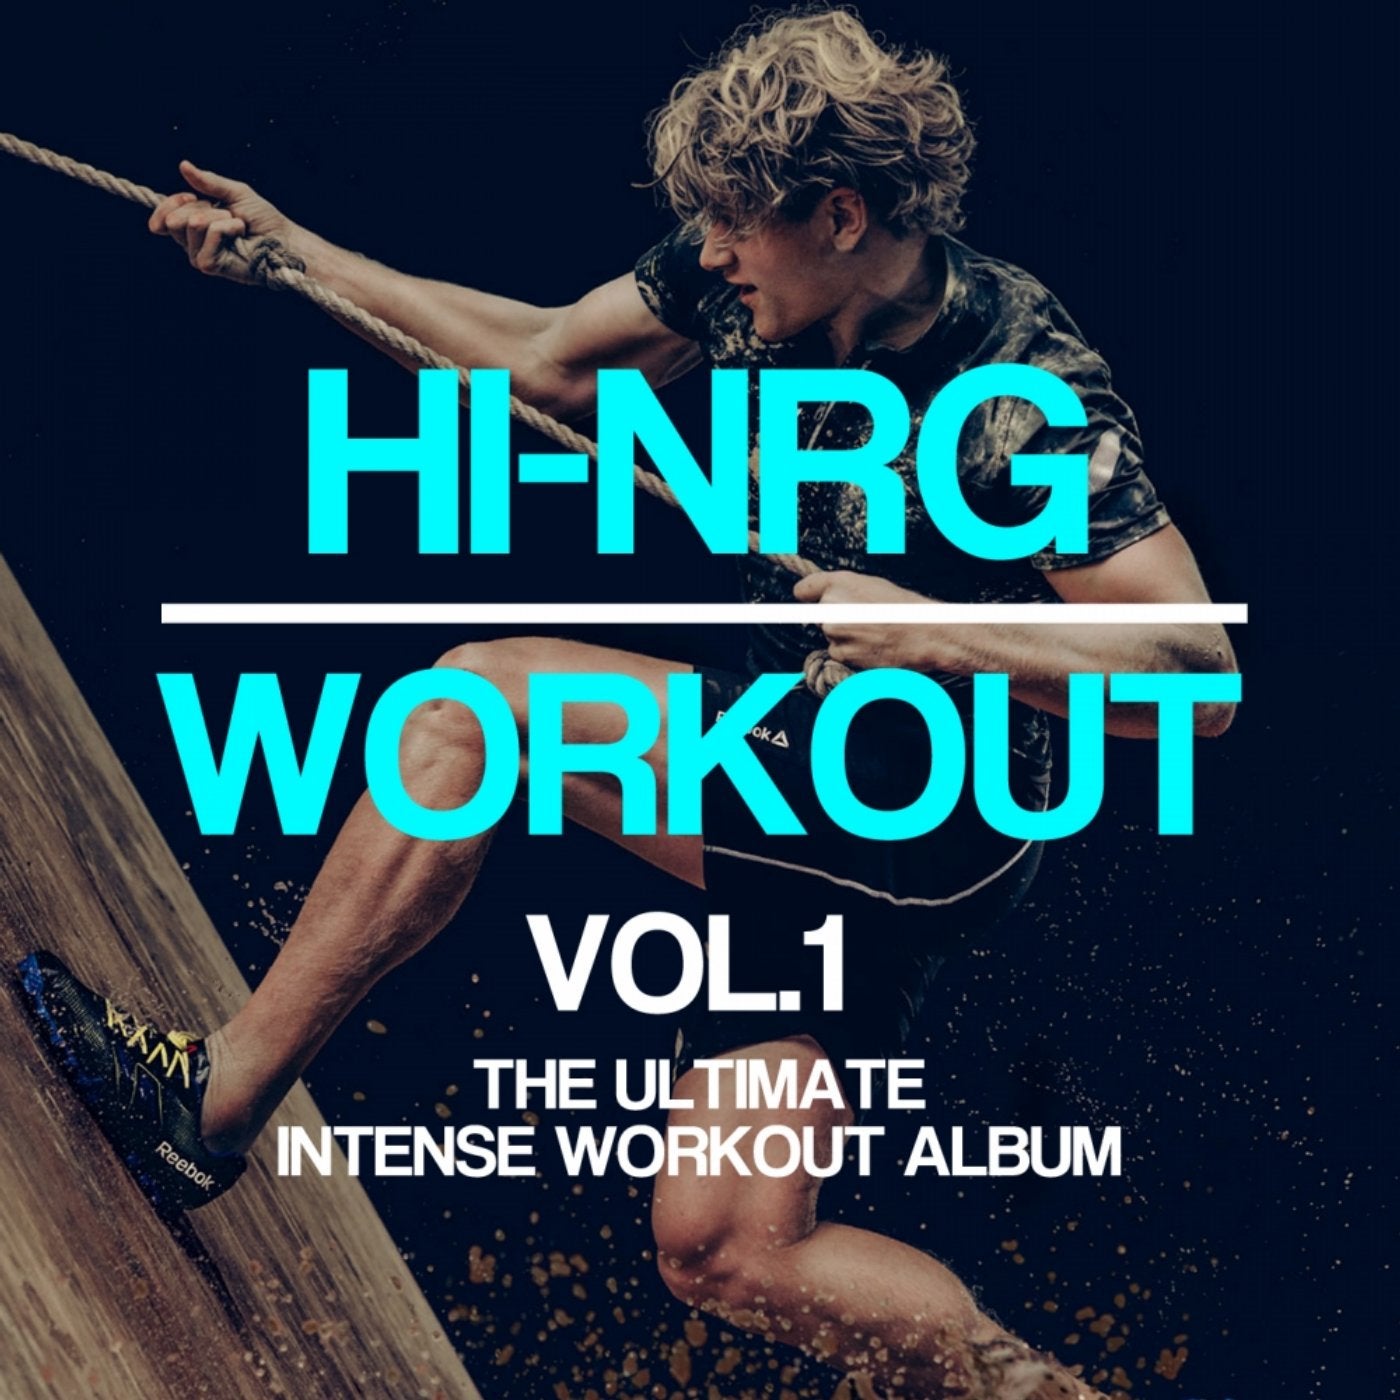 Hi-NRG Workout, Vol. 1